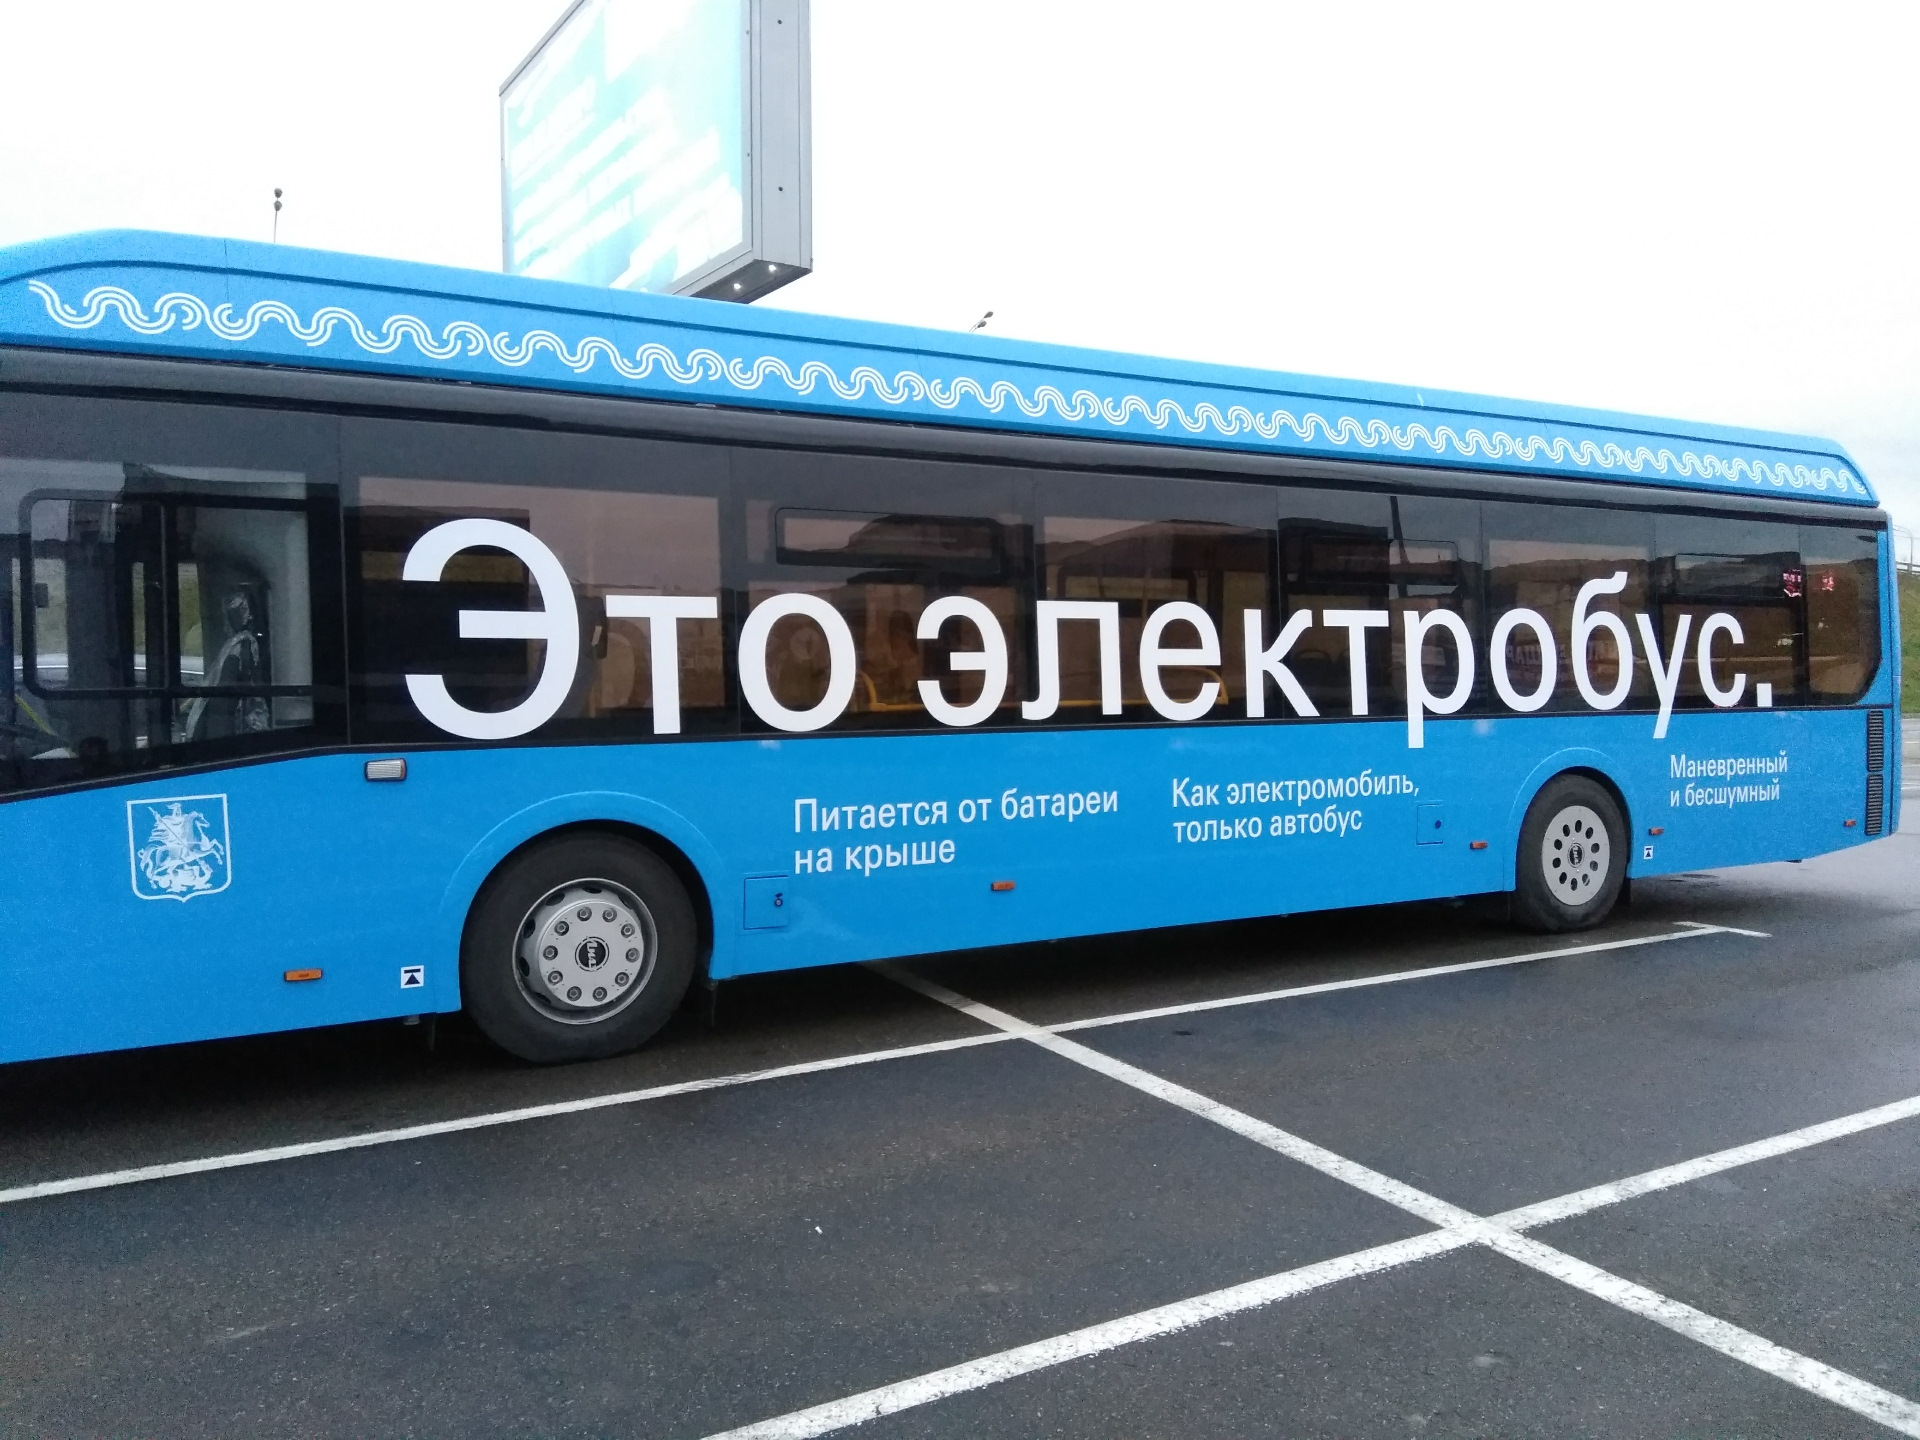 Электробус вднх. Exhibition автобусов. Выставка автобусов в Москве. Электроавтобус ВДНХ.